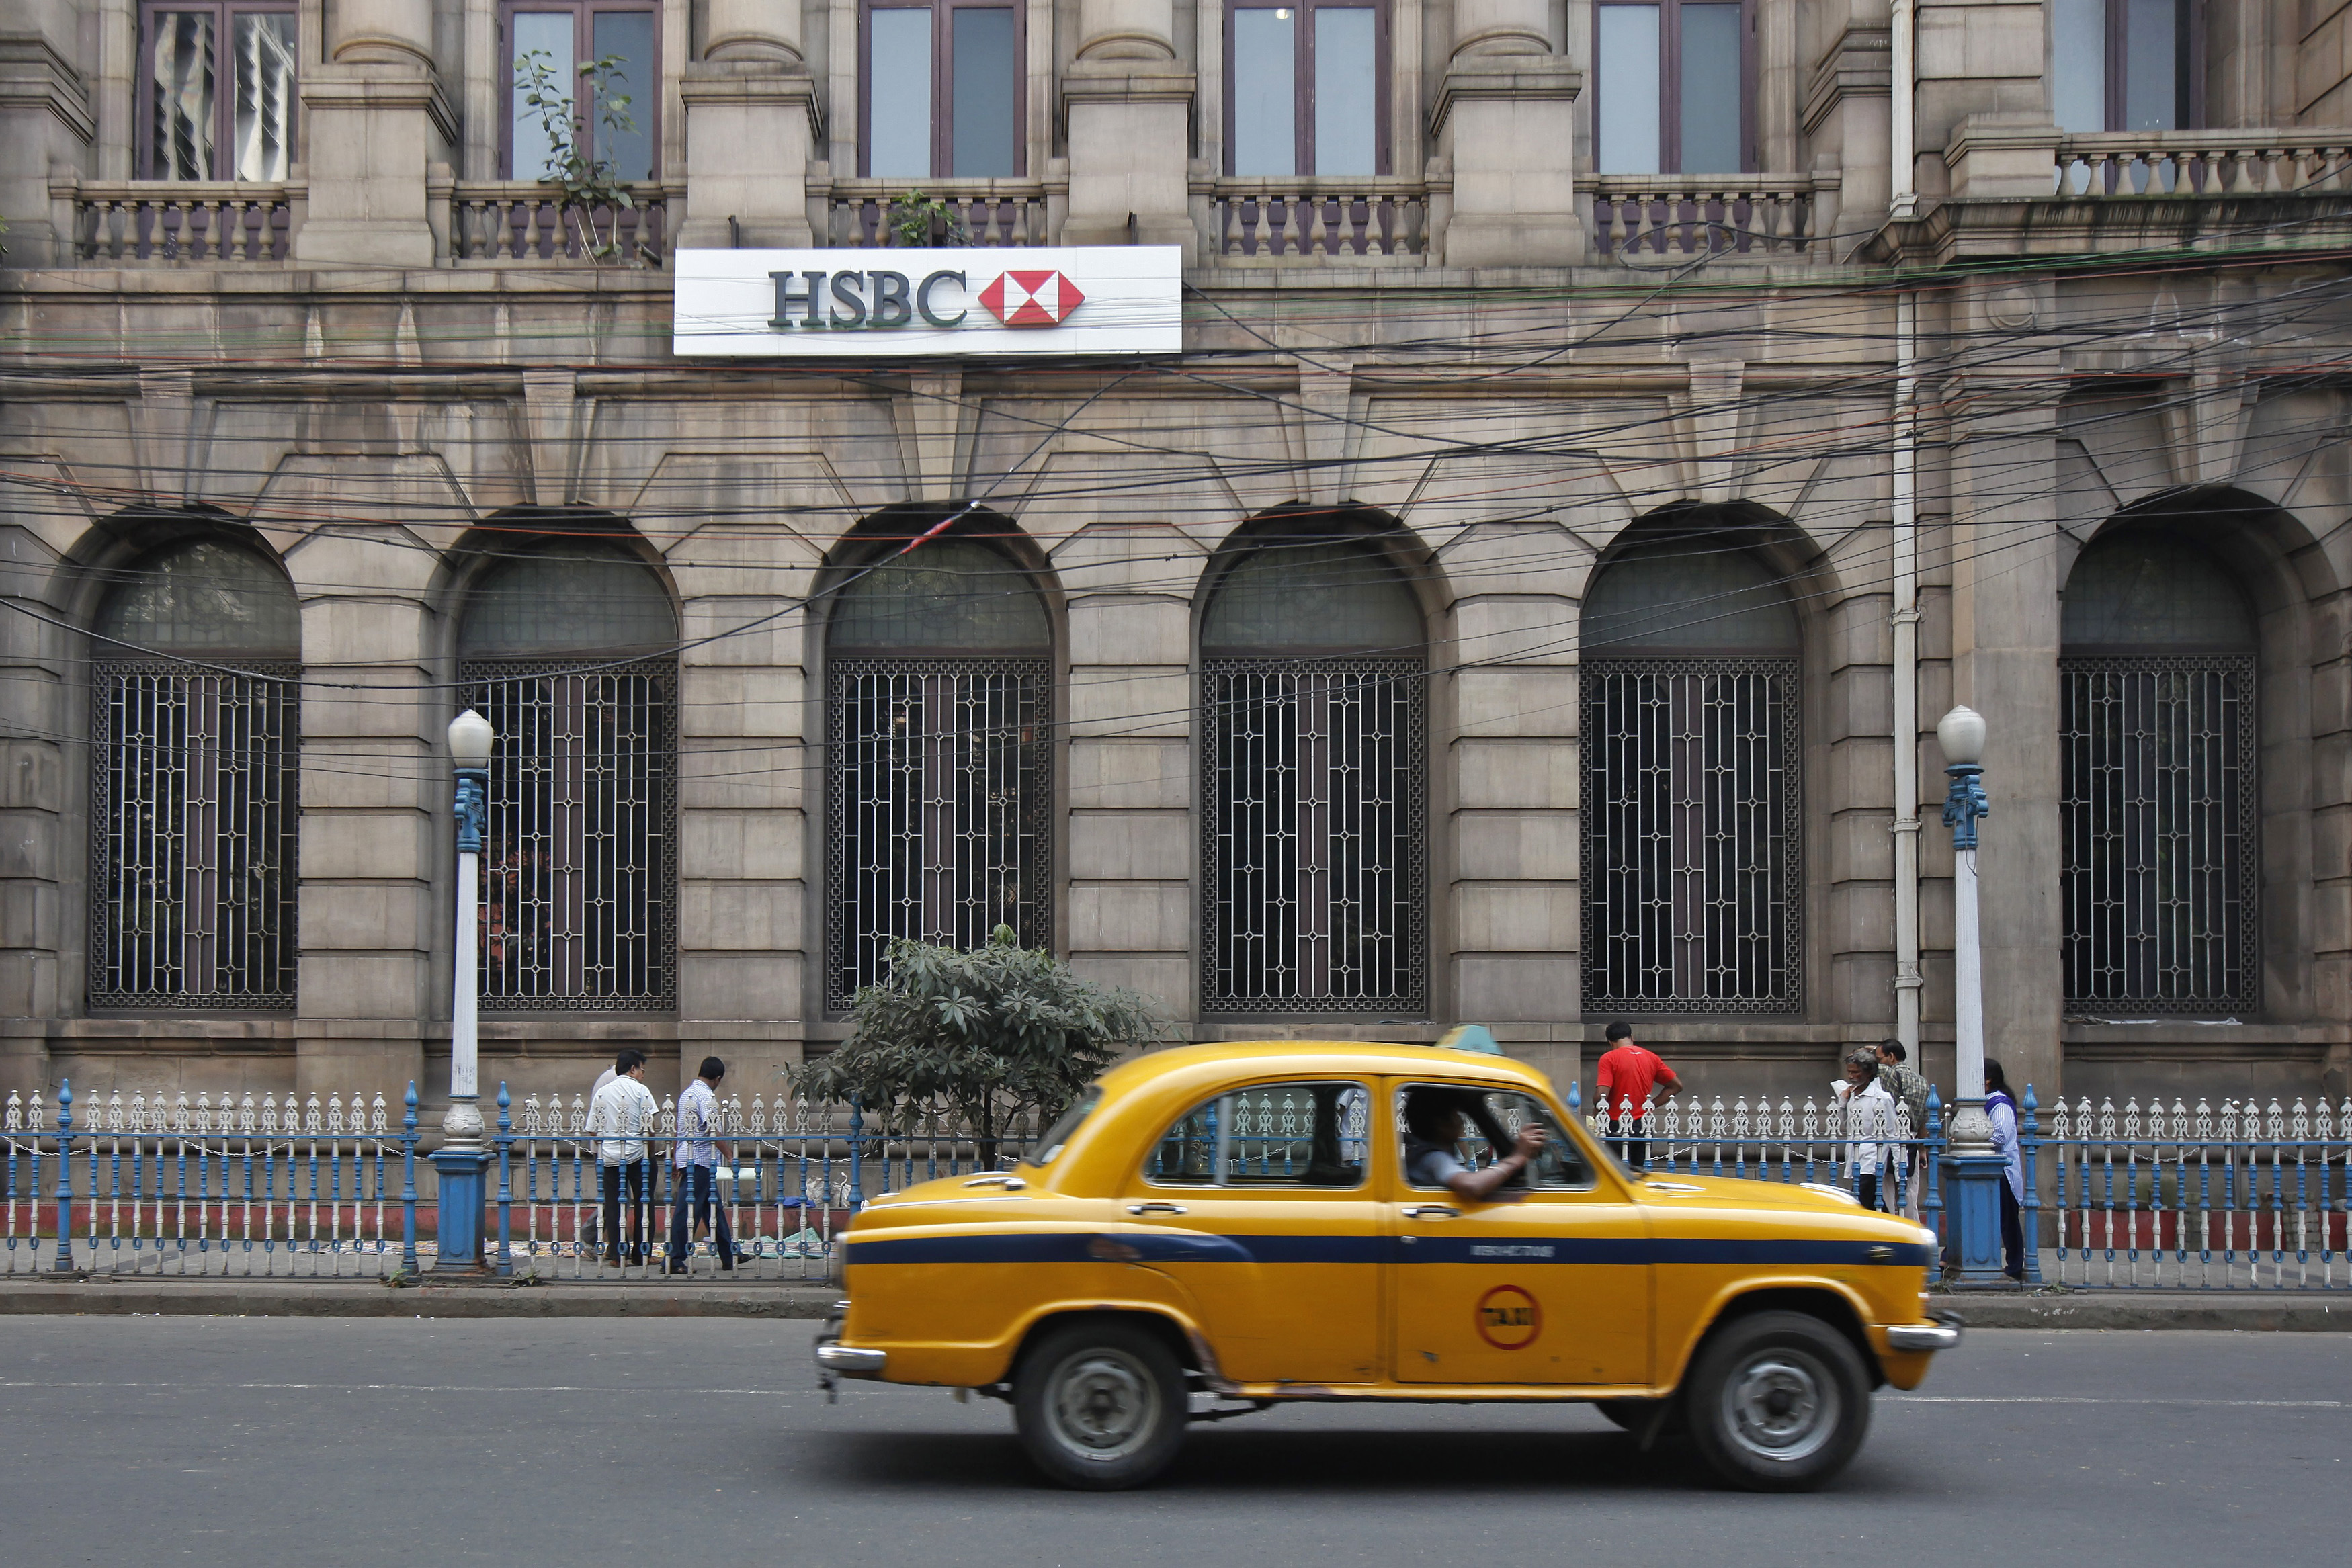 A yellow ambassador taxi drives past the HSBC bank building in Kolkata